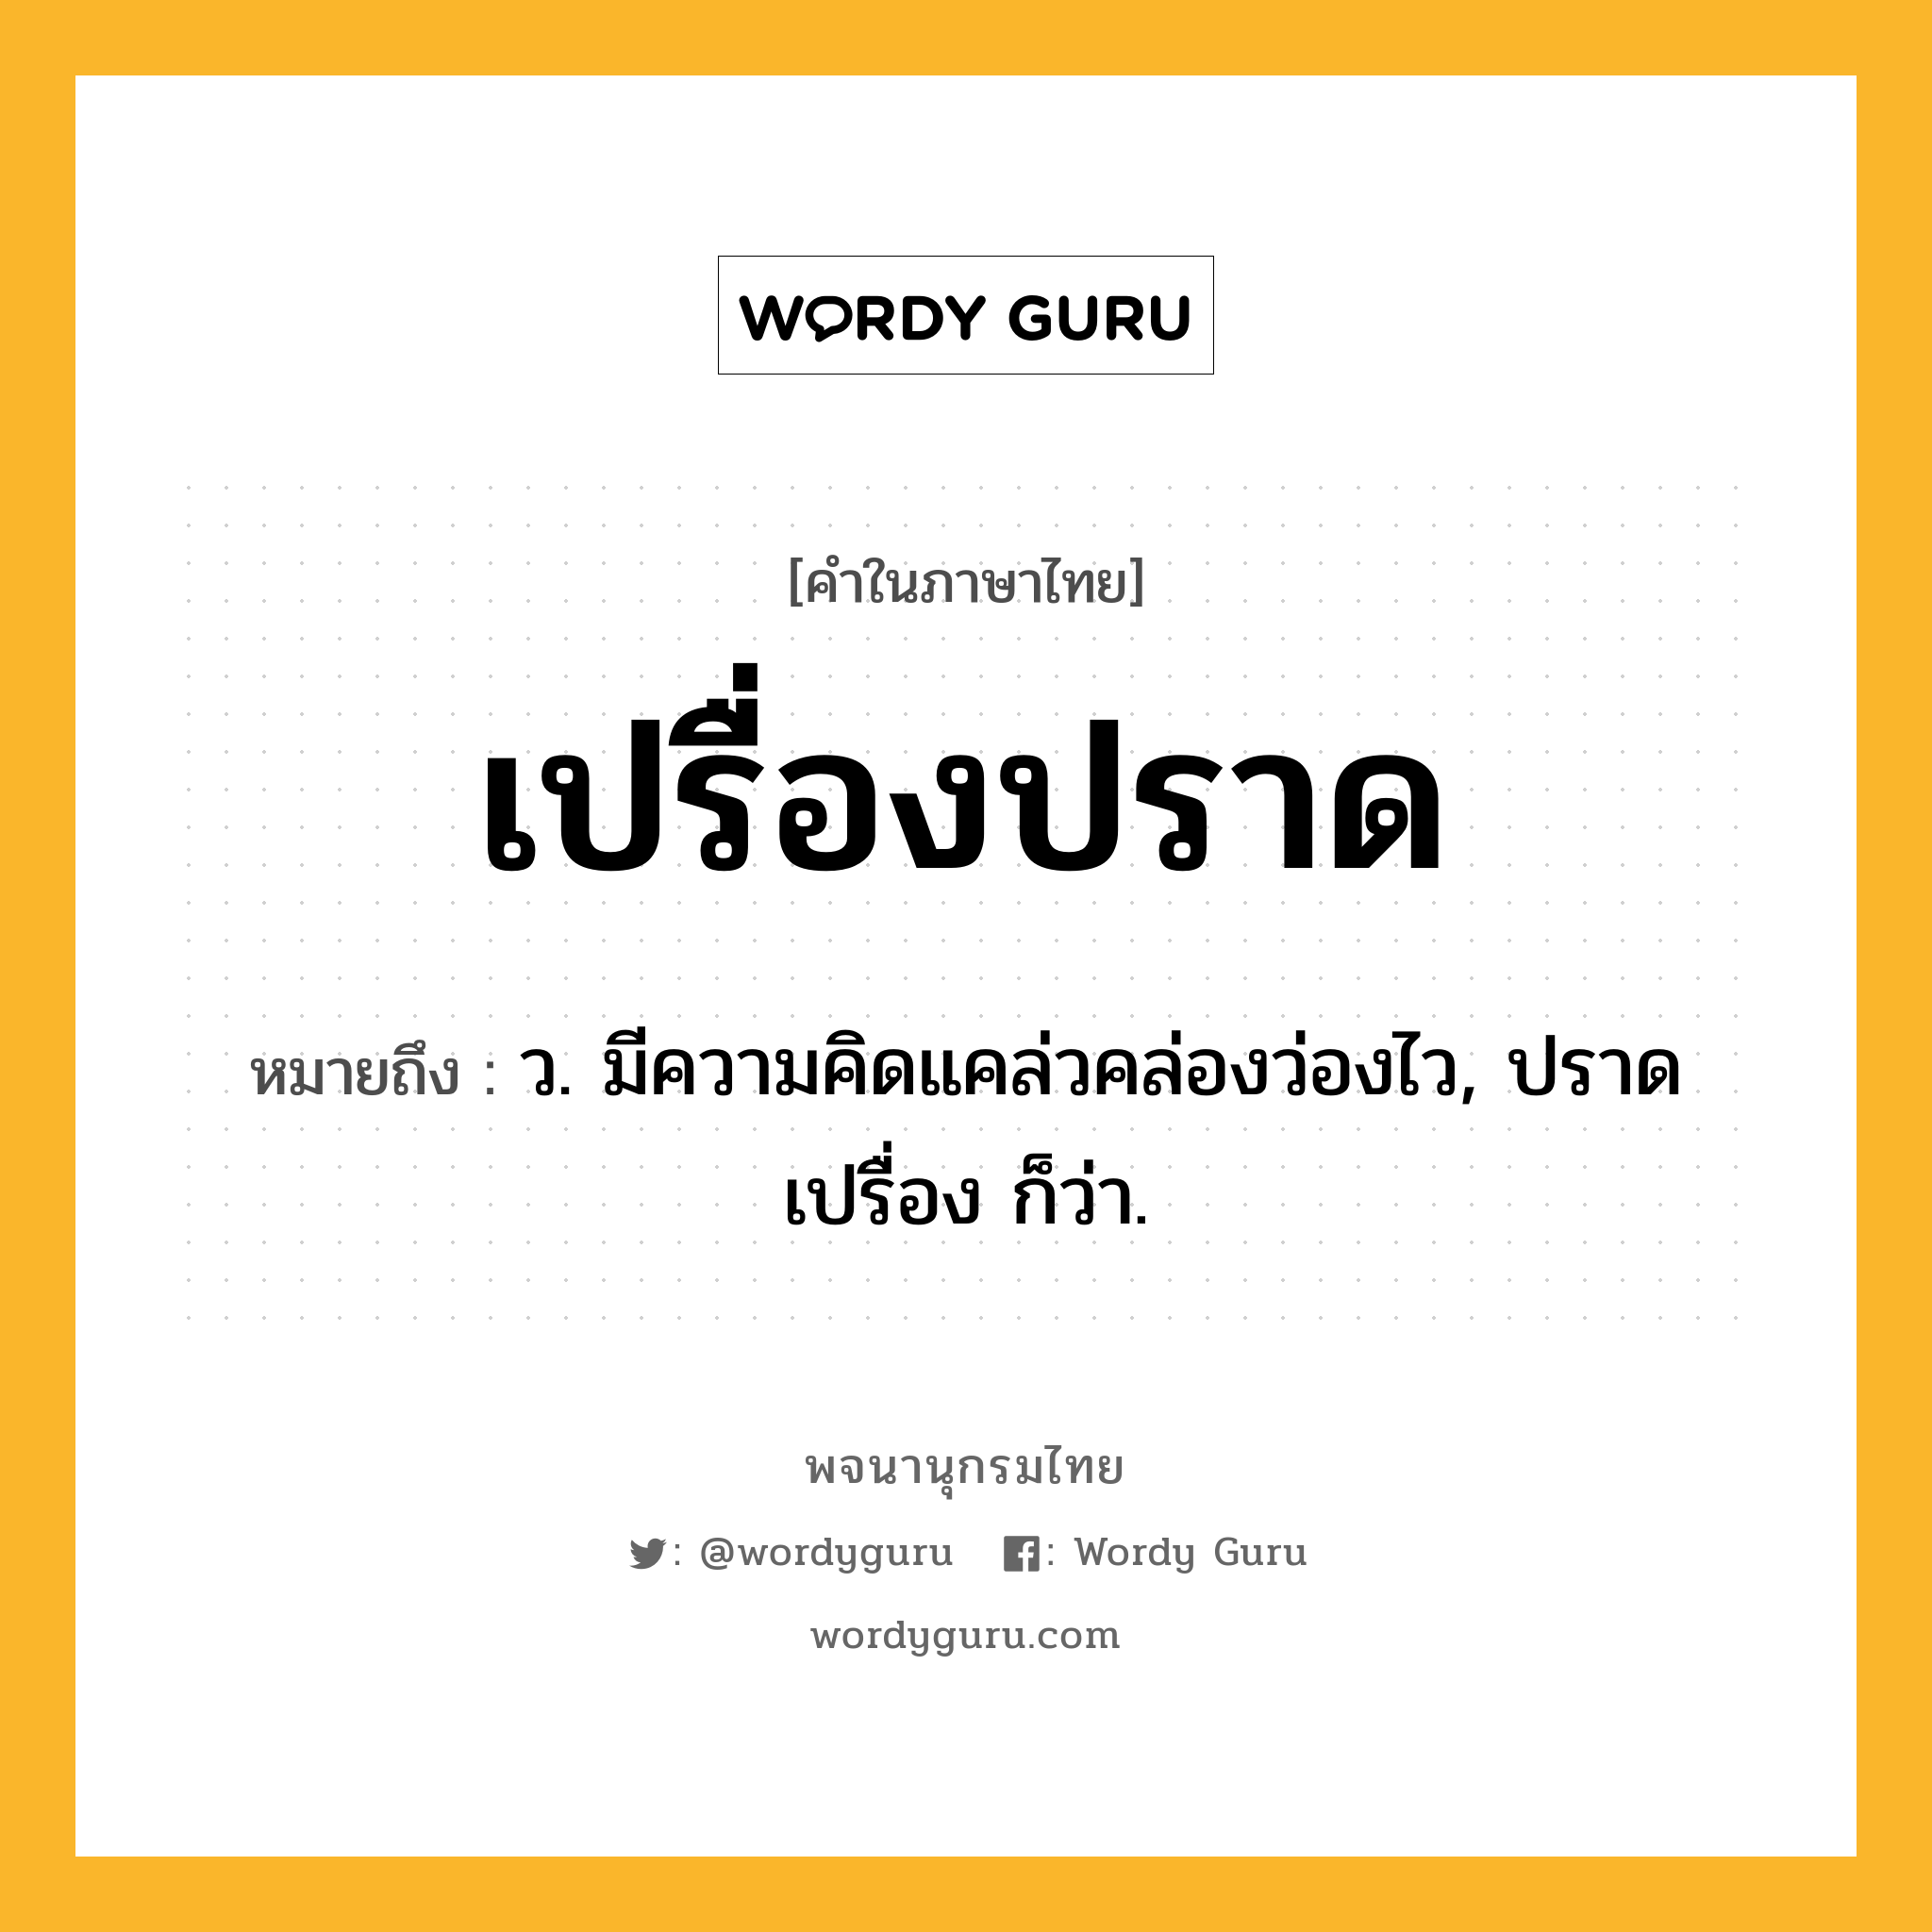 เปรื่องปราด หมายถึงอะไร?, คำในภาษาไทย เปรื่องปราด หมายถึง ว. มีความคิดแคล่วคล่องว่องไว, ปราดเปรื่อง ก็ว่า.